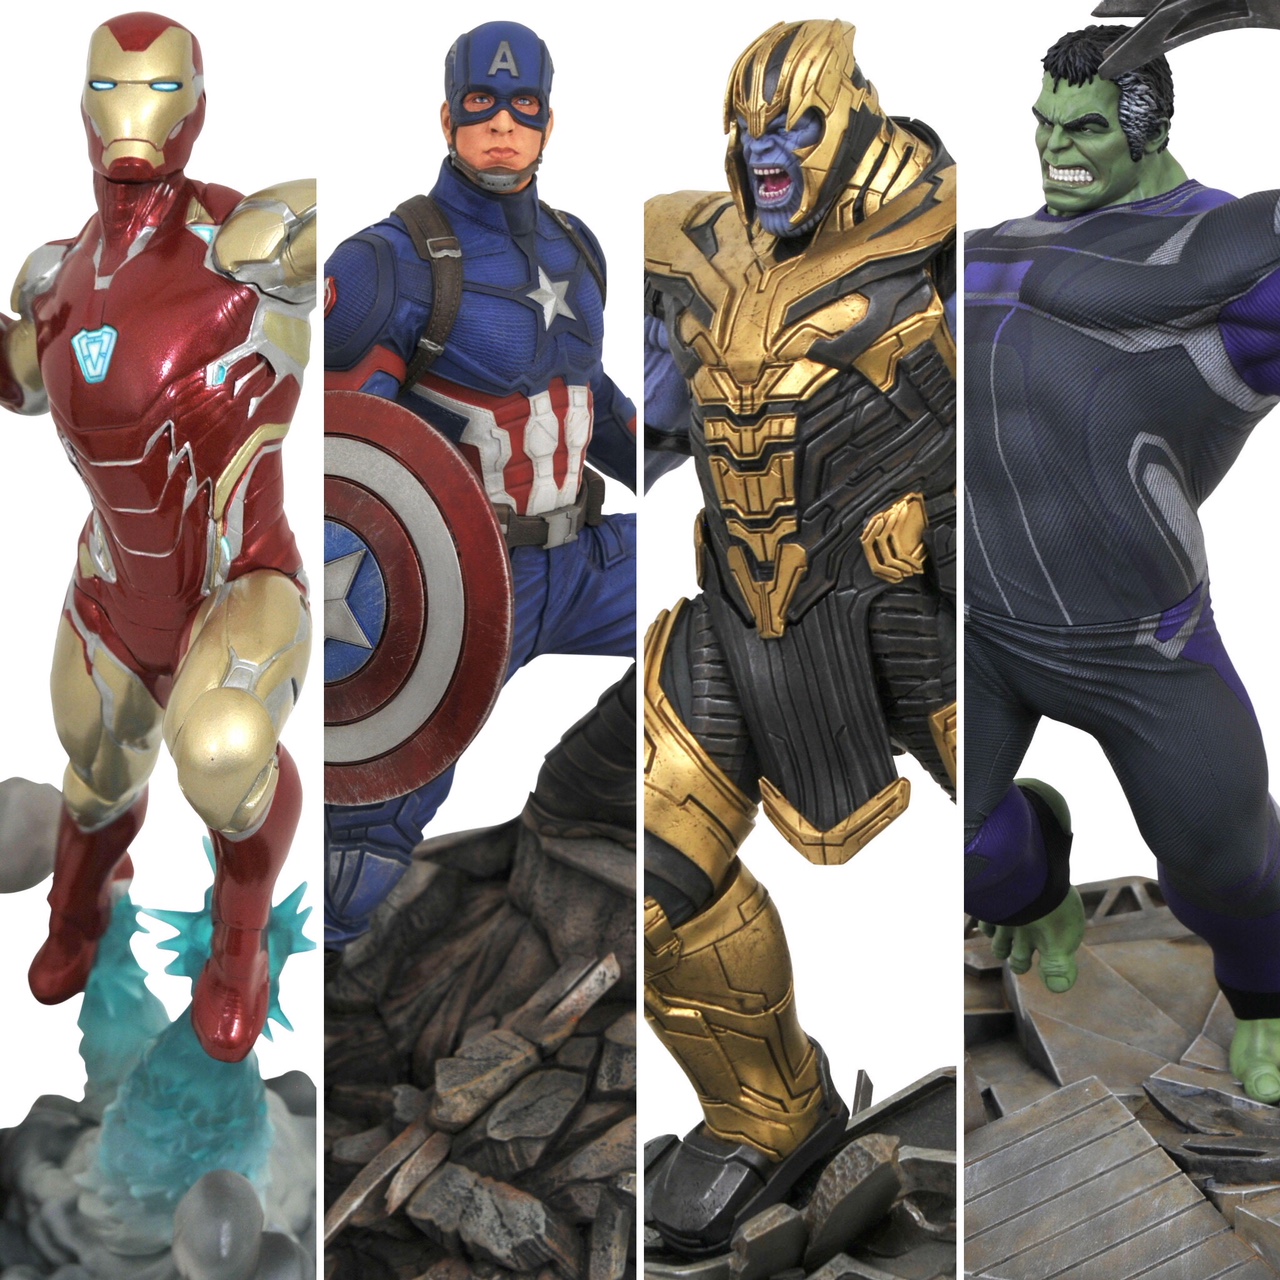 Endgame Thor Iron Man Hulk  Thanos Action Figures Toy Lot 10 pcs Avengers 